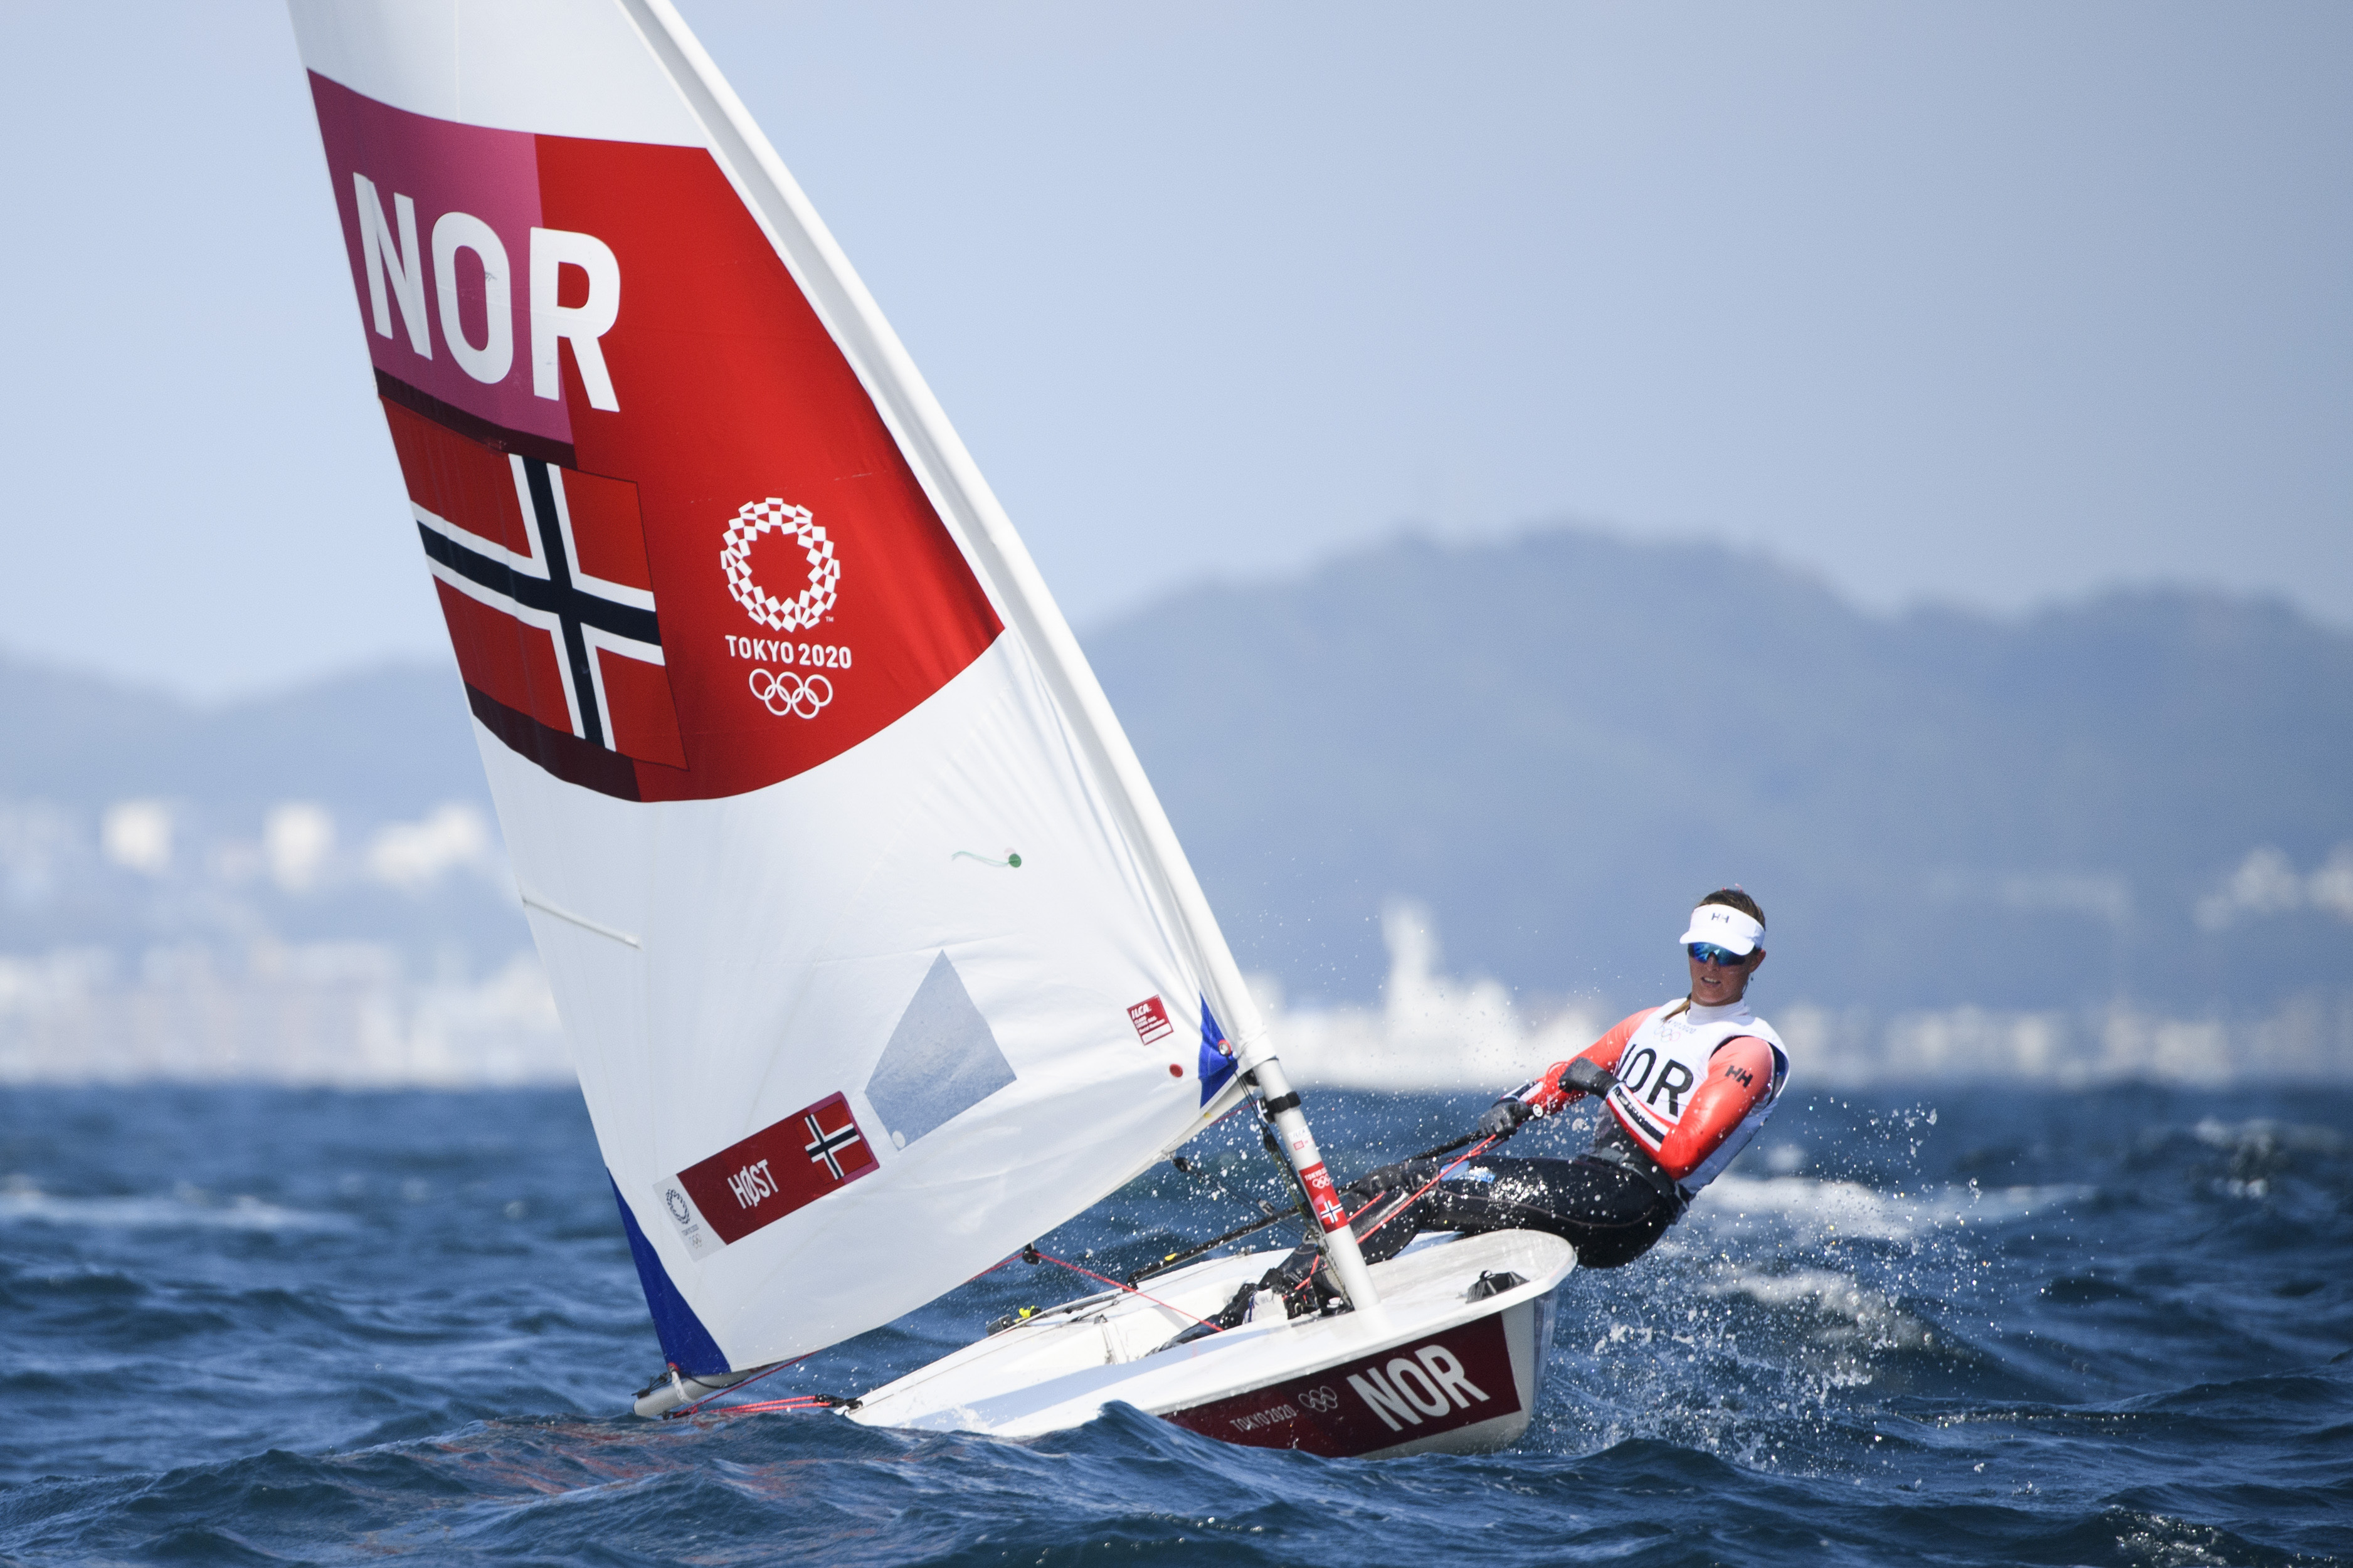 norske seilere imponerer før ol – to pallplasser i fransk regatta